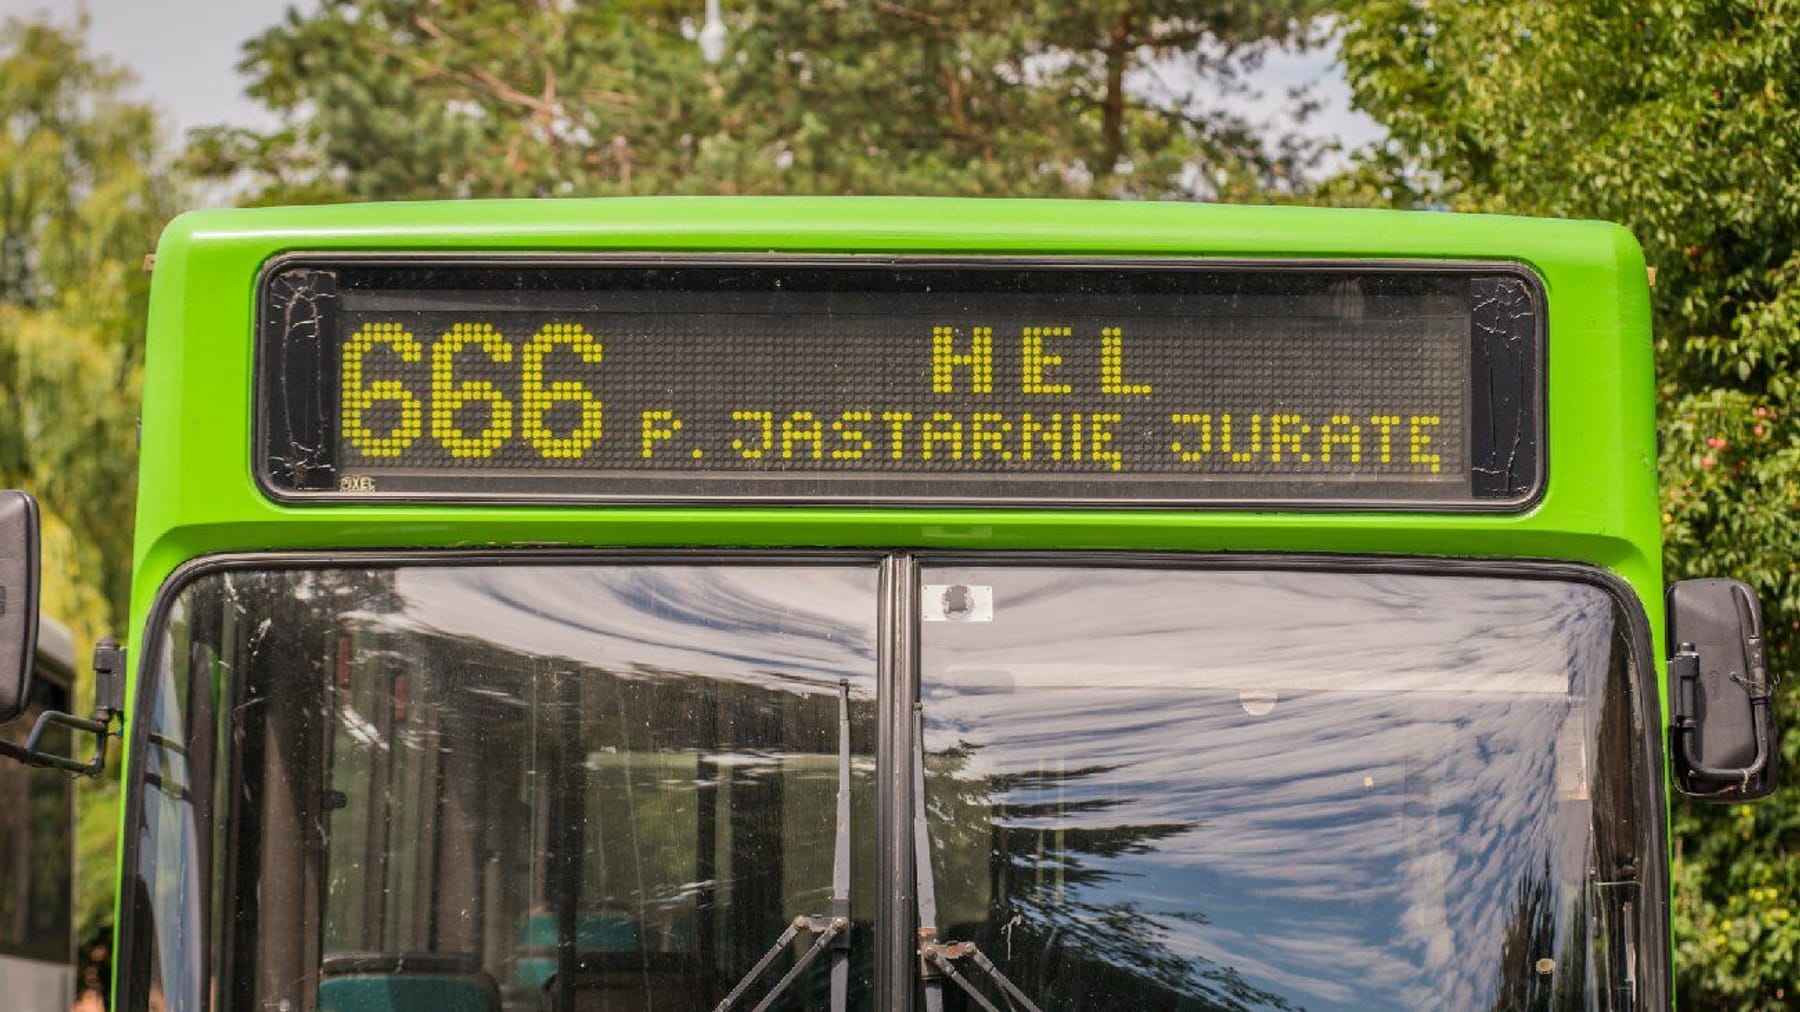 Linia autobusowa „Zła” 666 – „Autostrada na Hel” odwołana po sporze